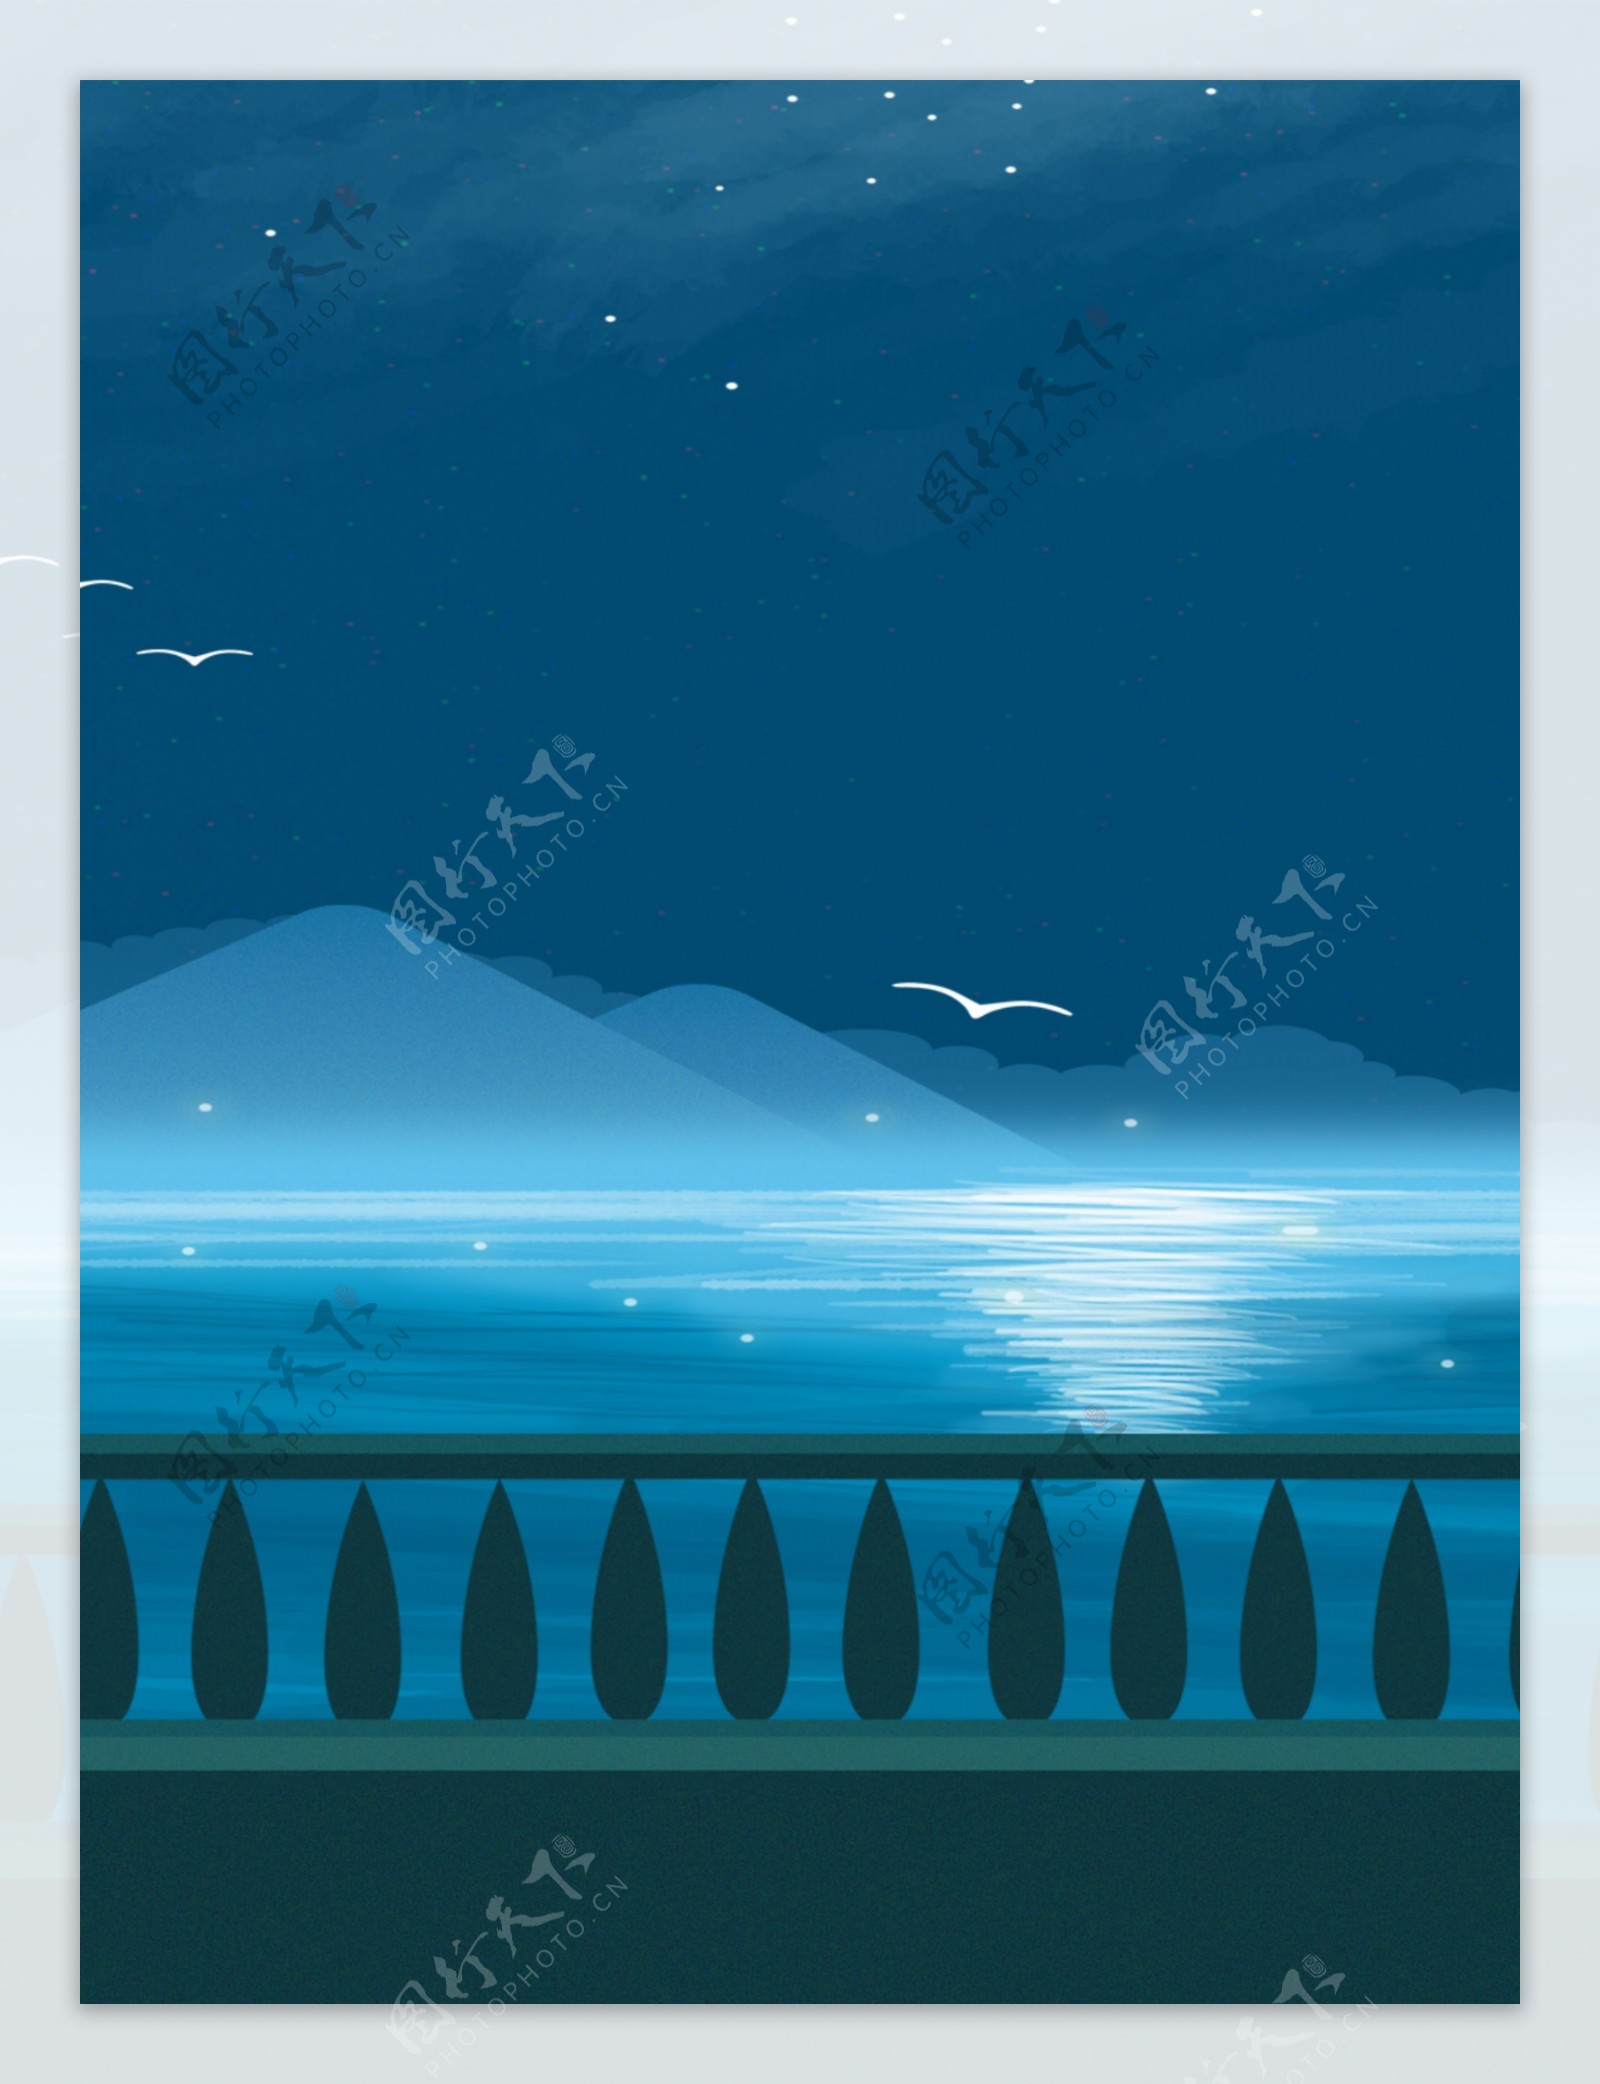 简约冷色调夜空下的大海和海鸥广告背景